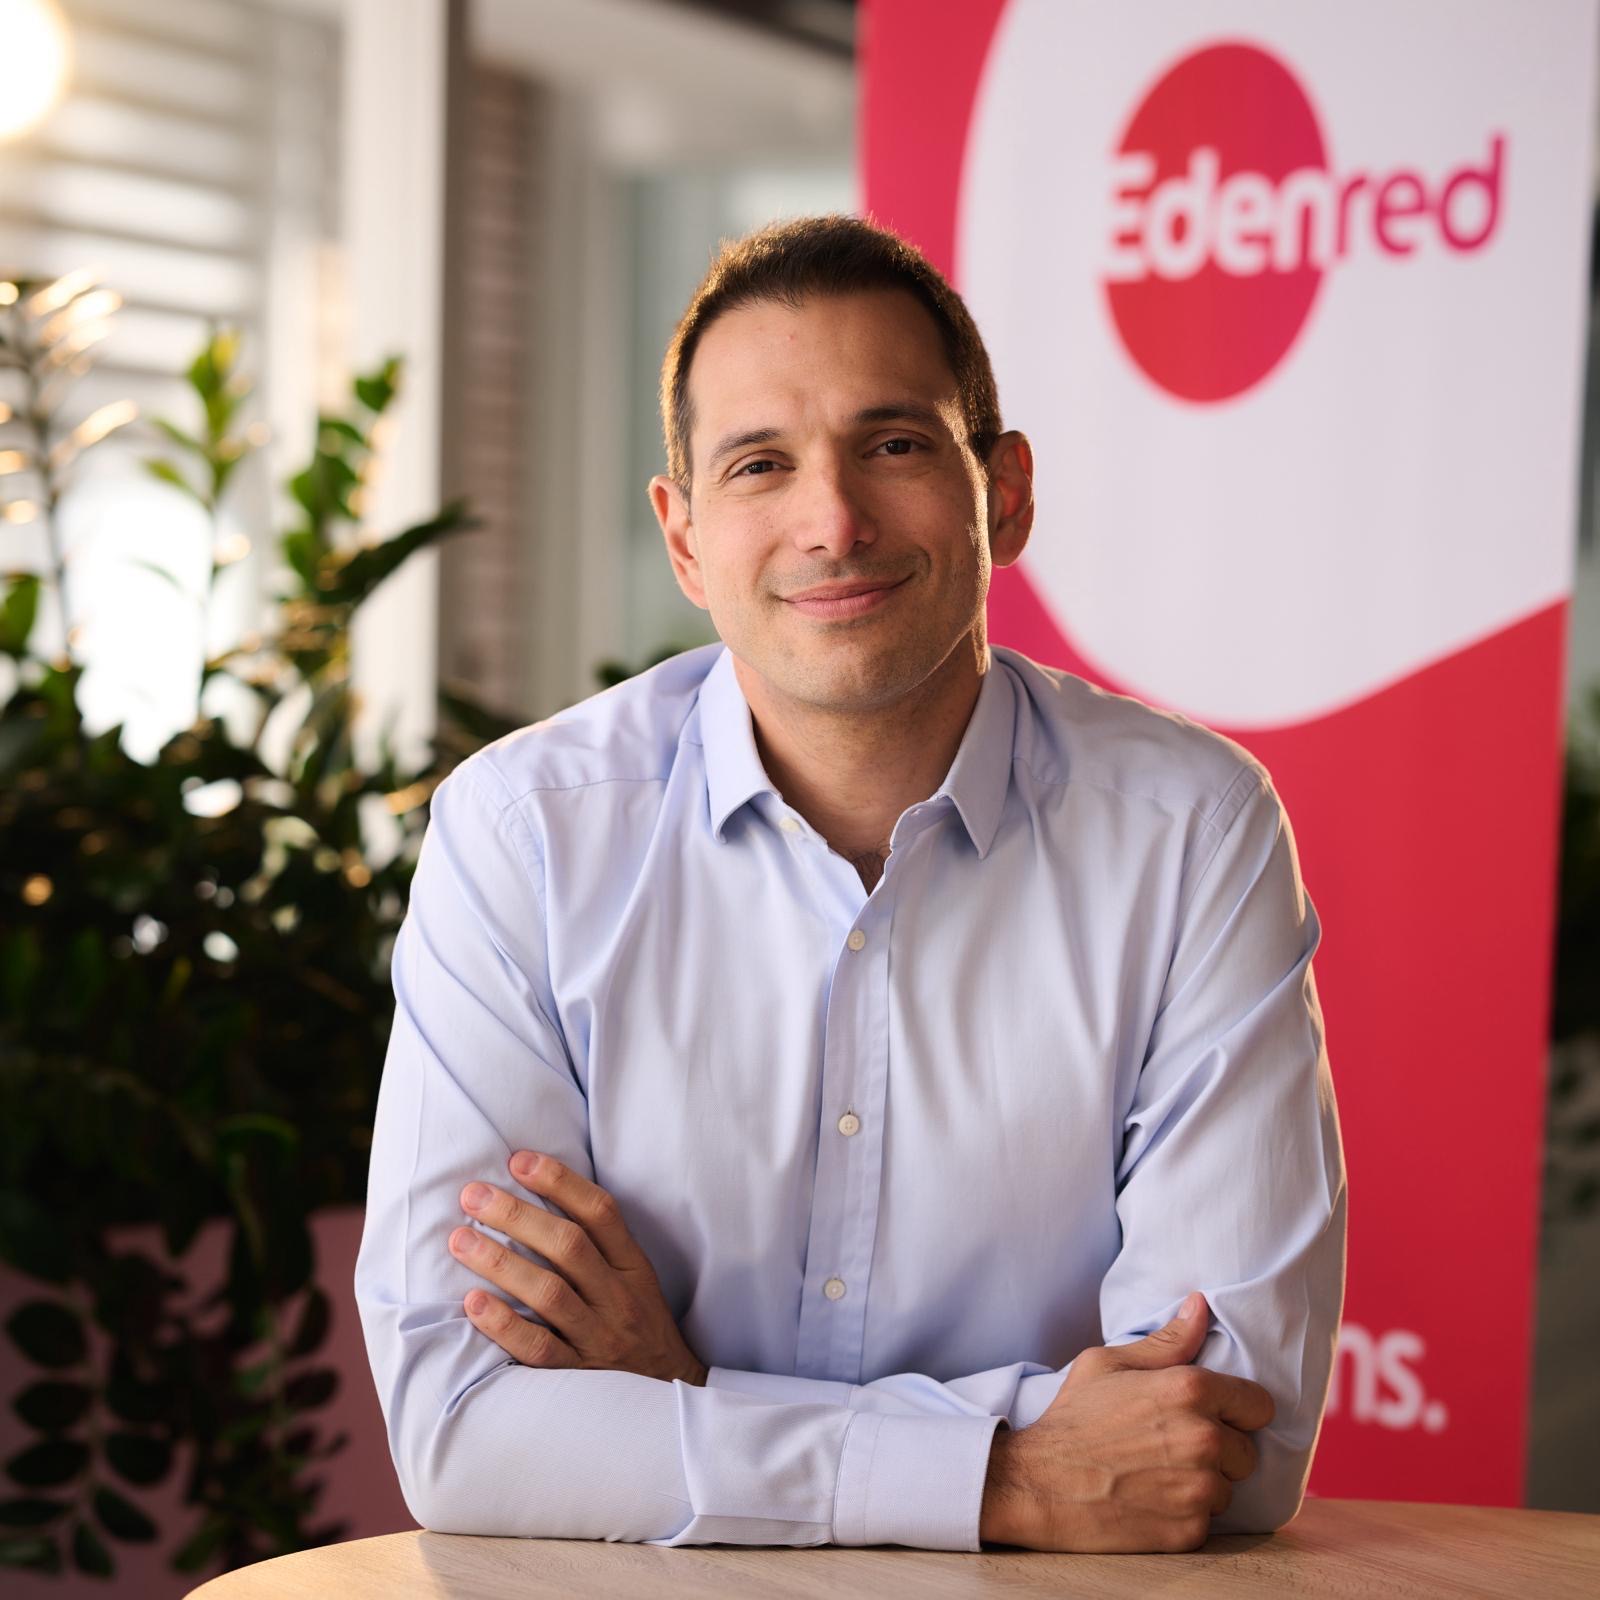 Premieră: Edenred va lansa cardurile virtuale, completând ecosistemul de soluții digitale oferite angajaților